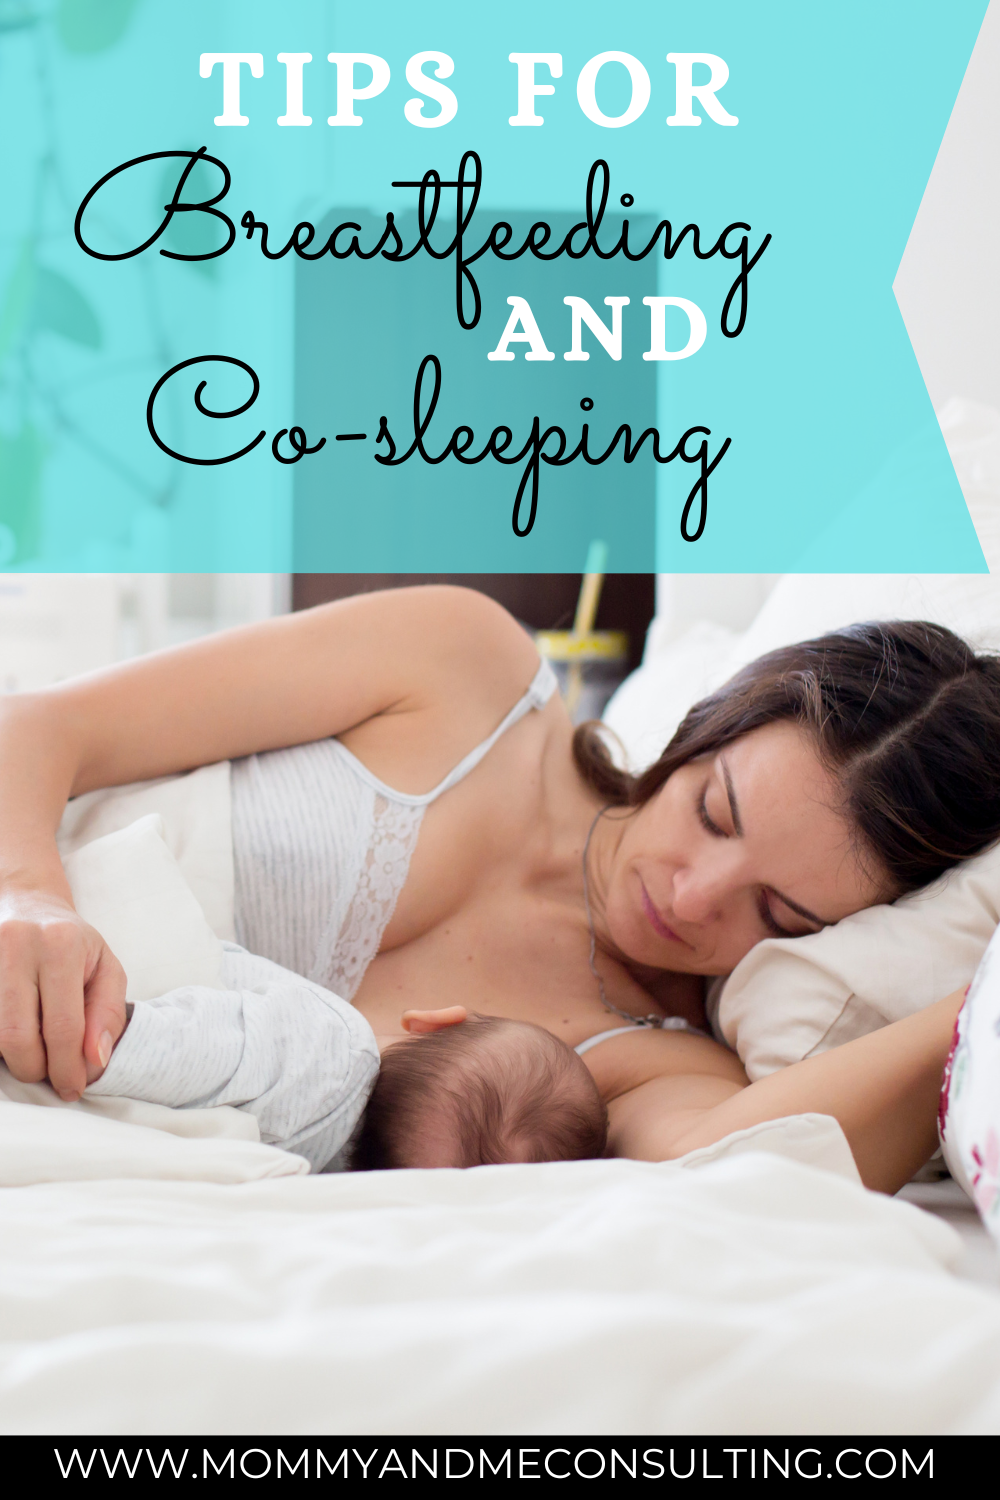 Breastfeeding and Co-sleeping